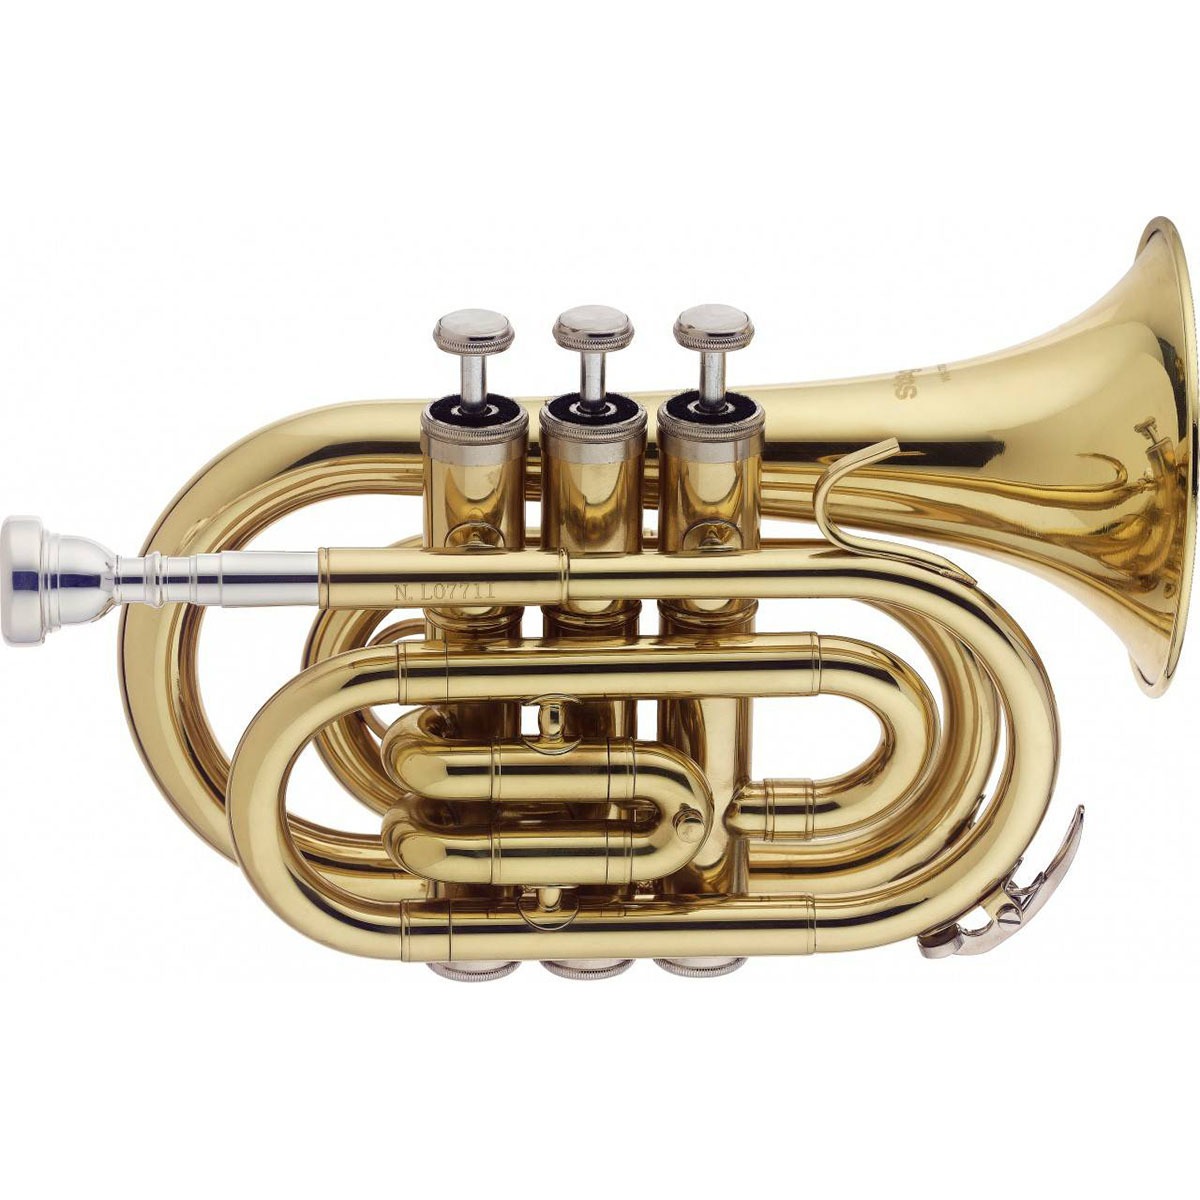 Звук музыкальной трубы. Труба Stagg WS-tr215s. Труба j. Michael tr-380. Труба медный духовой инструмент. Труба помповая духовой инструмент.